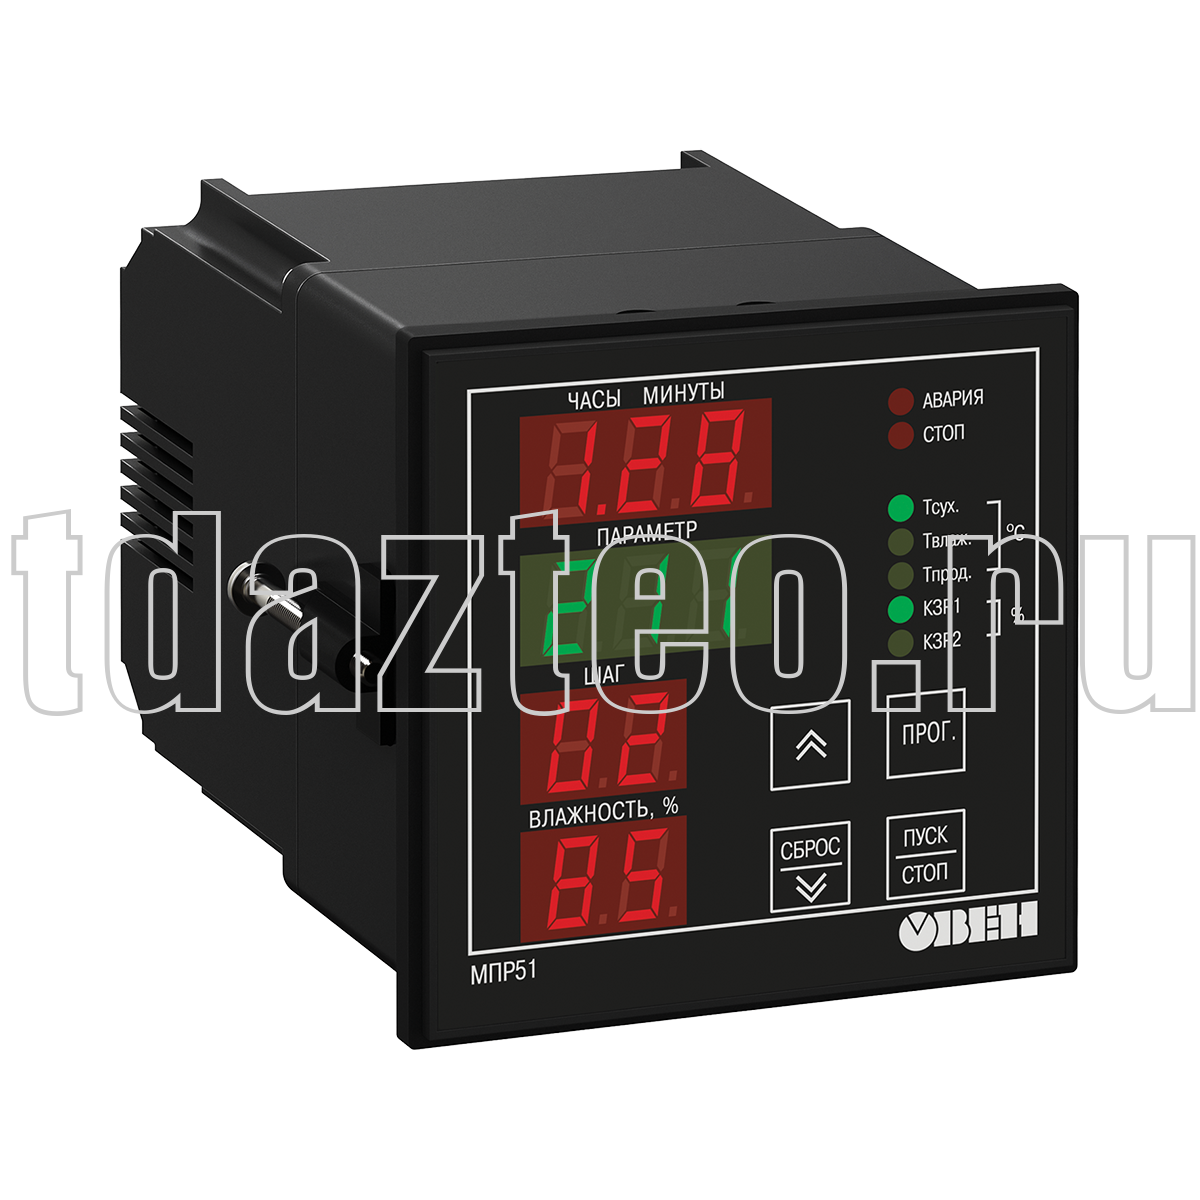 МПР51-Щ4.01 регулятор температуры и влажности, программируемый по времени ОВЕН.